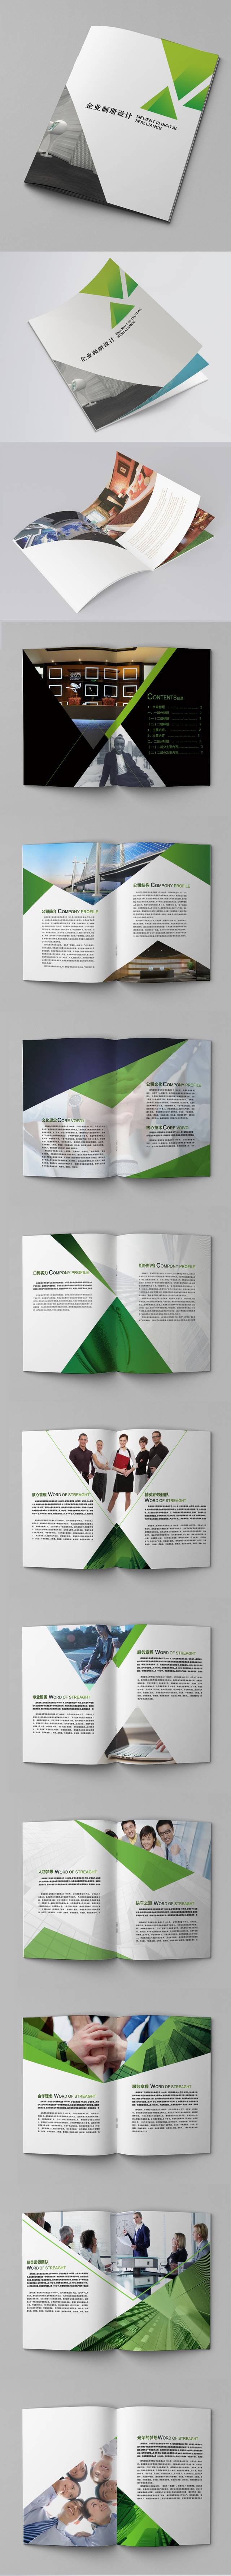 简洁大气企业画册设计